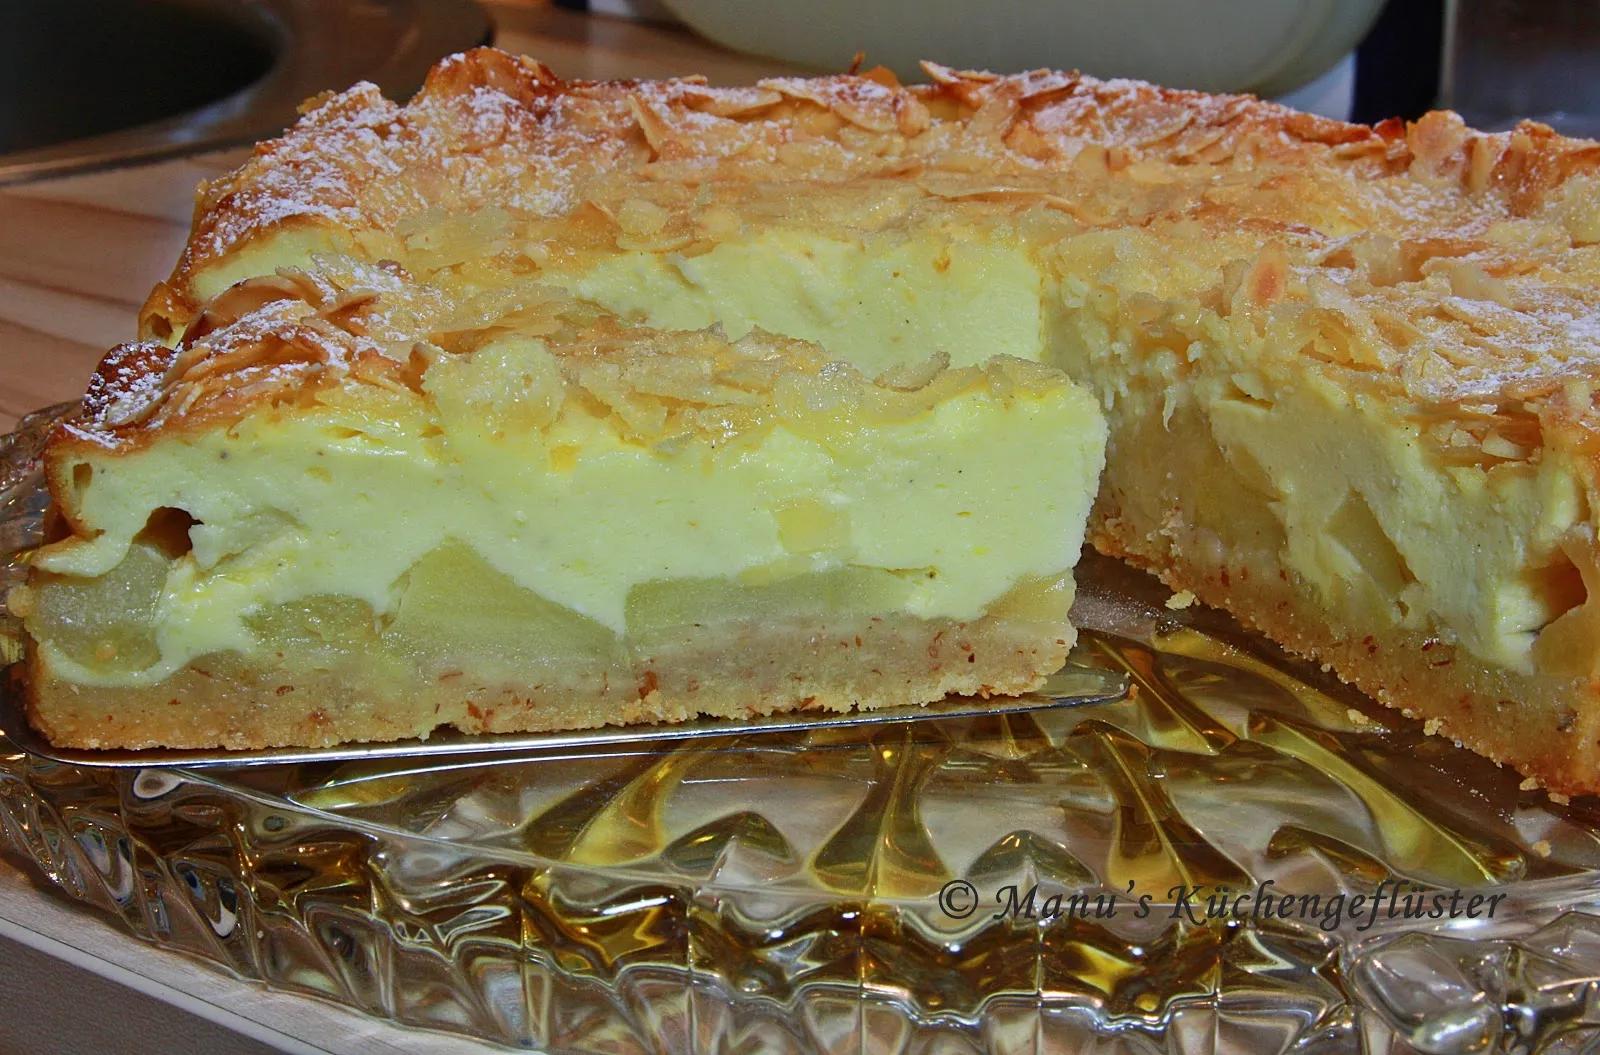 Manus Küchengeflüster: Apfel-Quark-Kuchen mit Mandelkruste